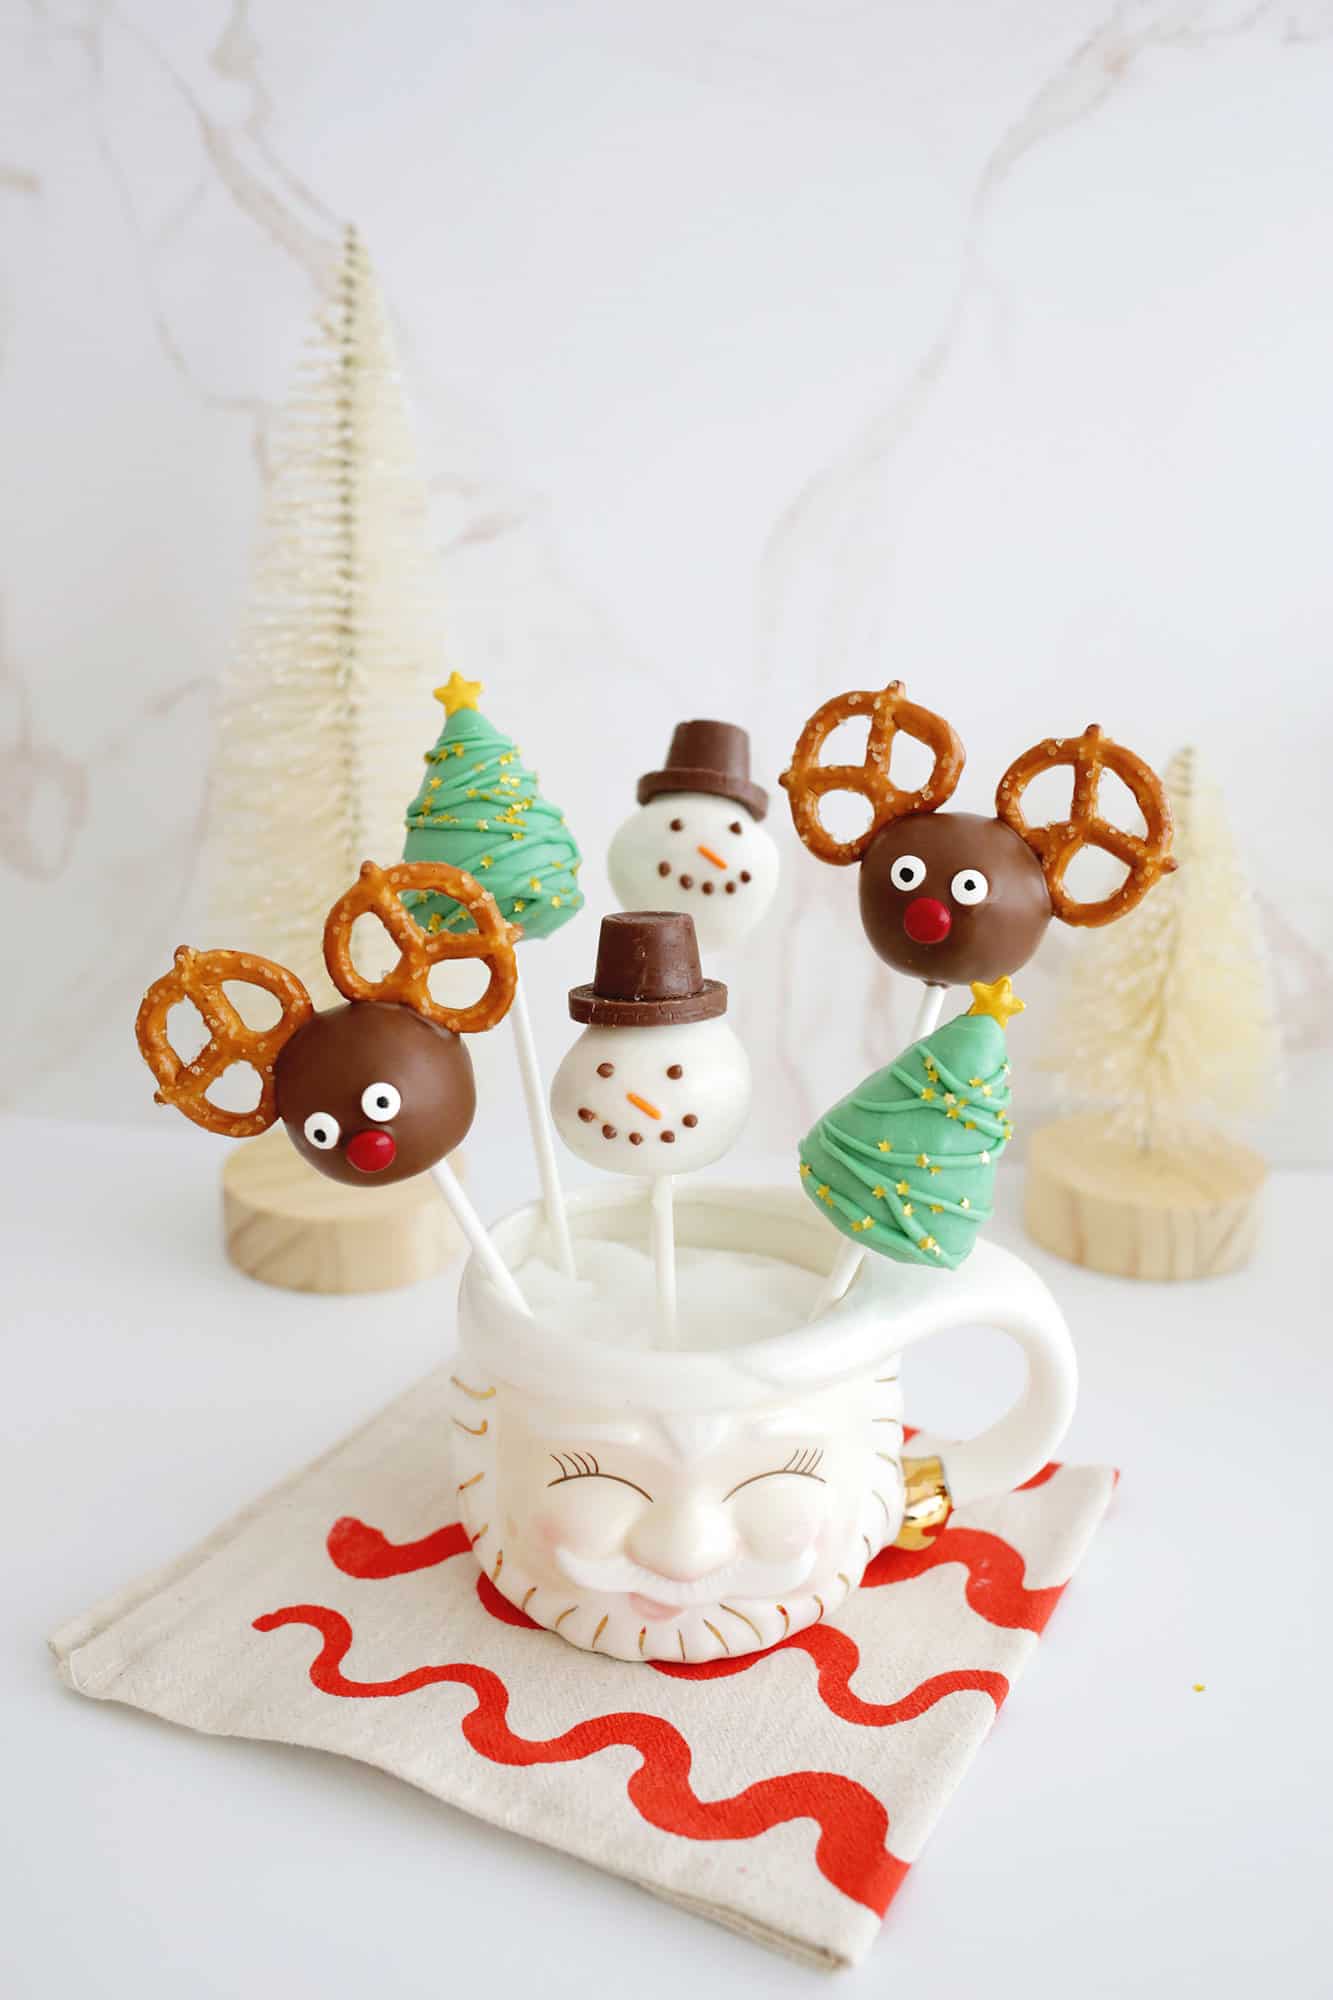 Bolo de Natal aparece com renas, boneco de neve e árvore de Natal